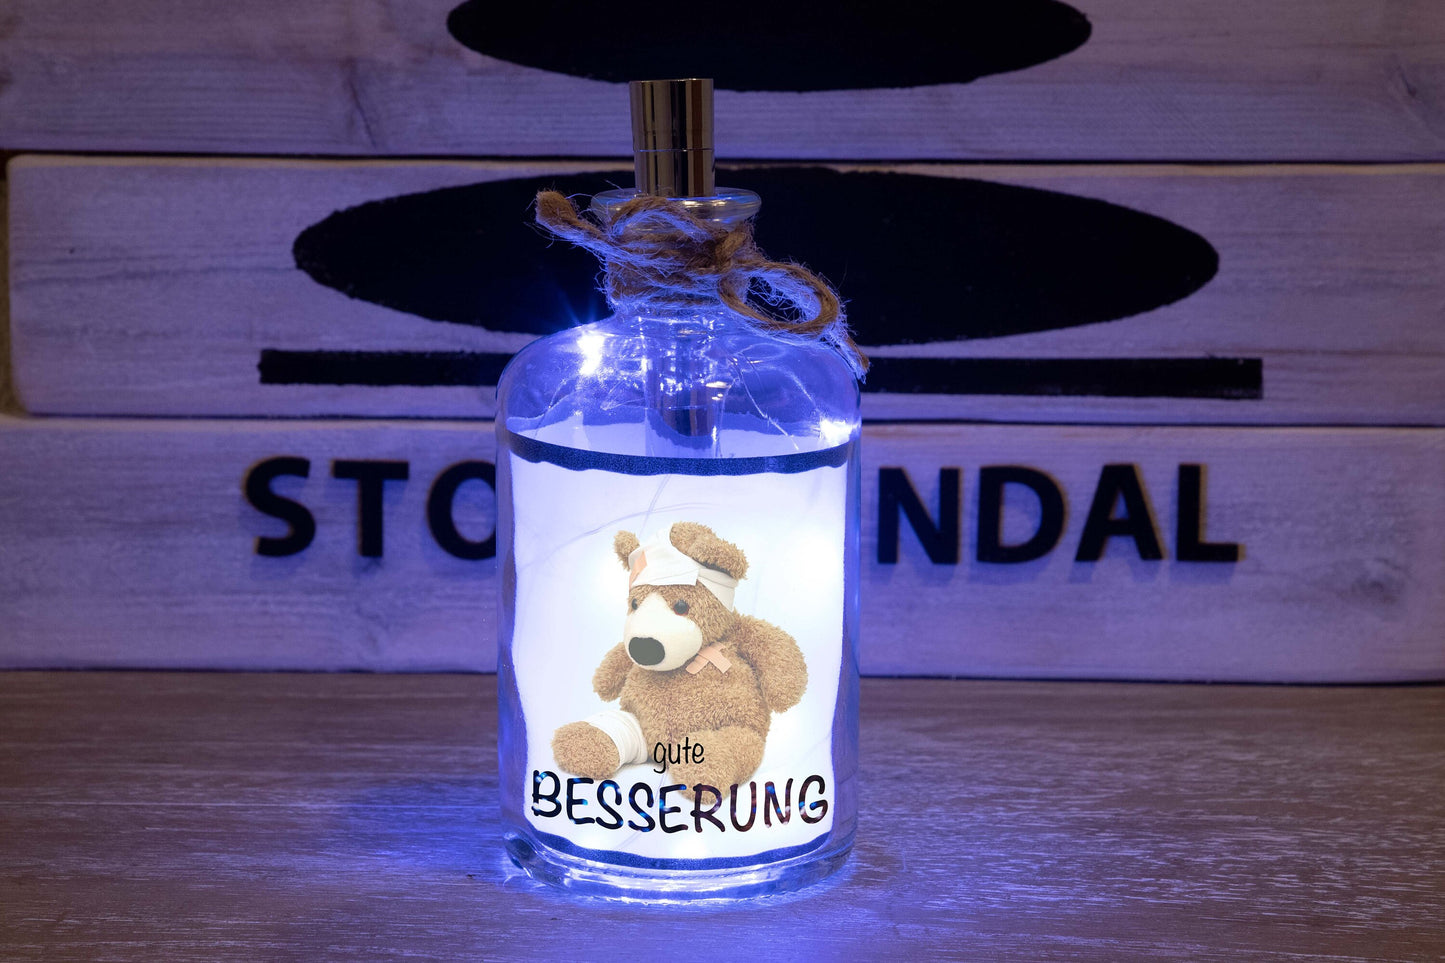 Stoamandal Flaschenlicht - Gute Besserung - LED Flaschenpost beleuchtet